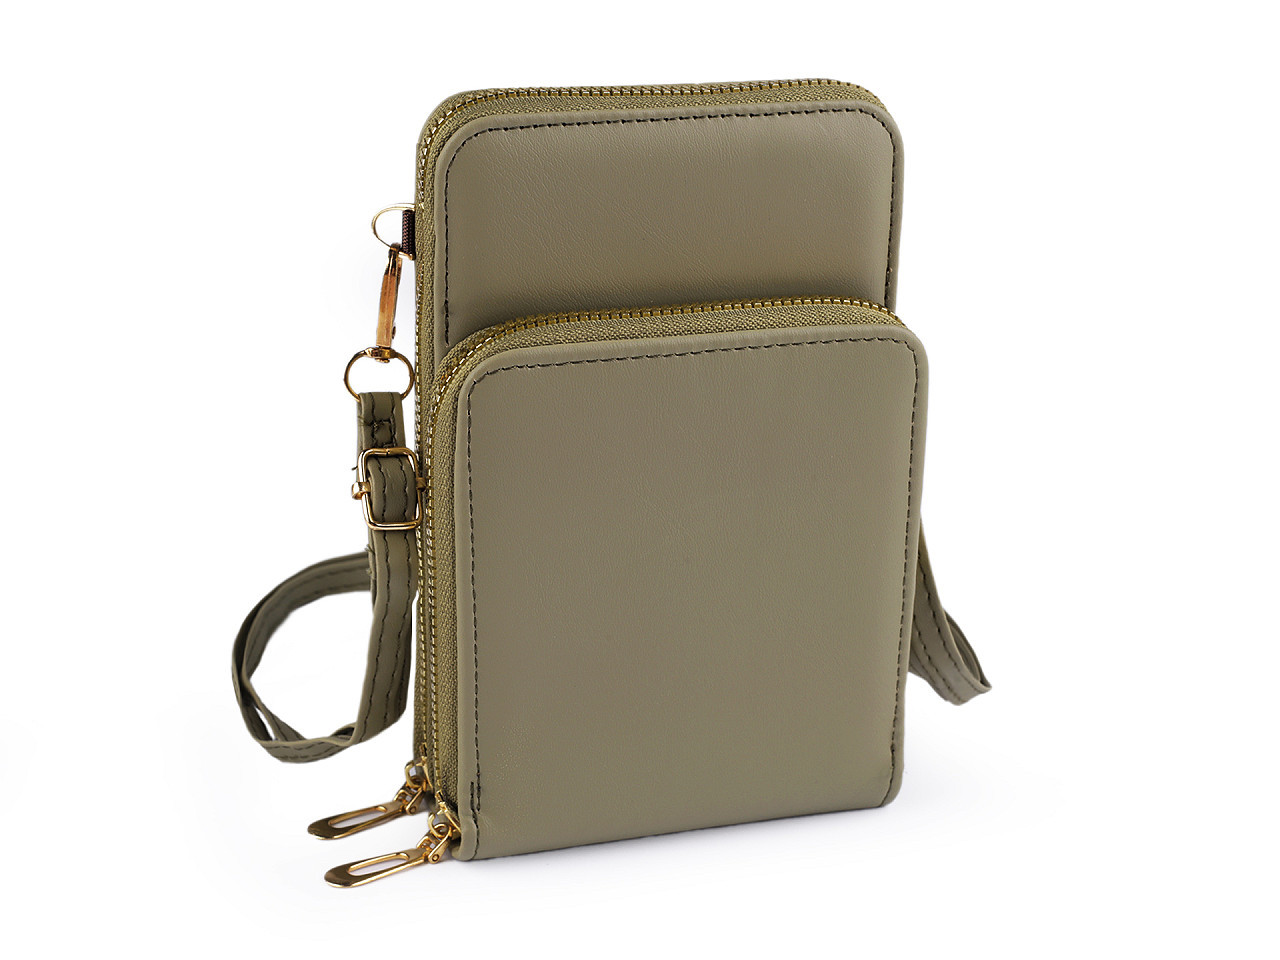 Peněženka s kapsou na mobil přes rameno crossbody 11,5x18 cm, barva 4 šedozelená sv.